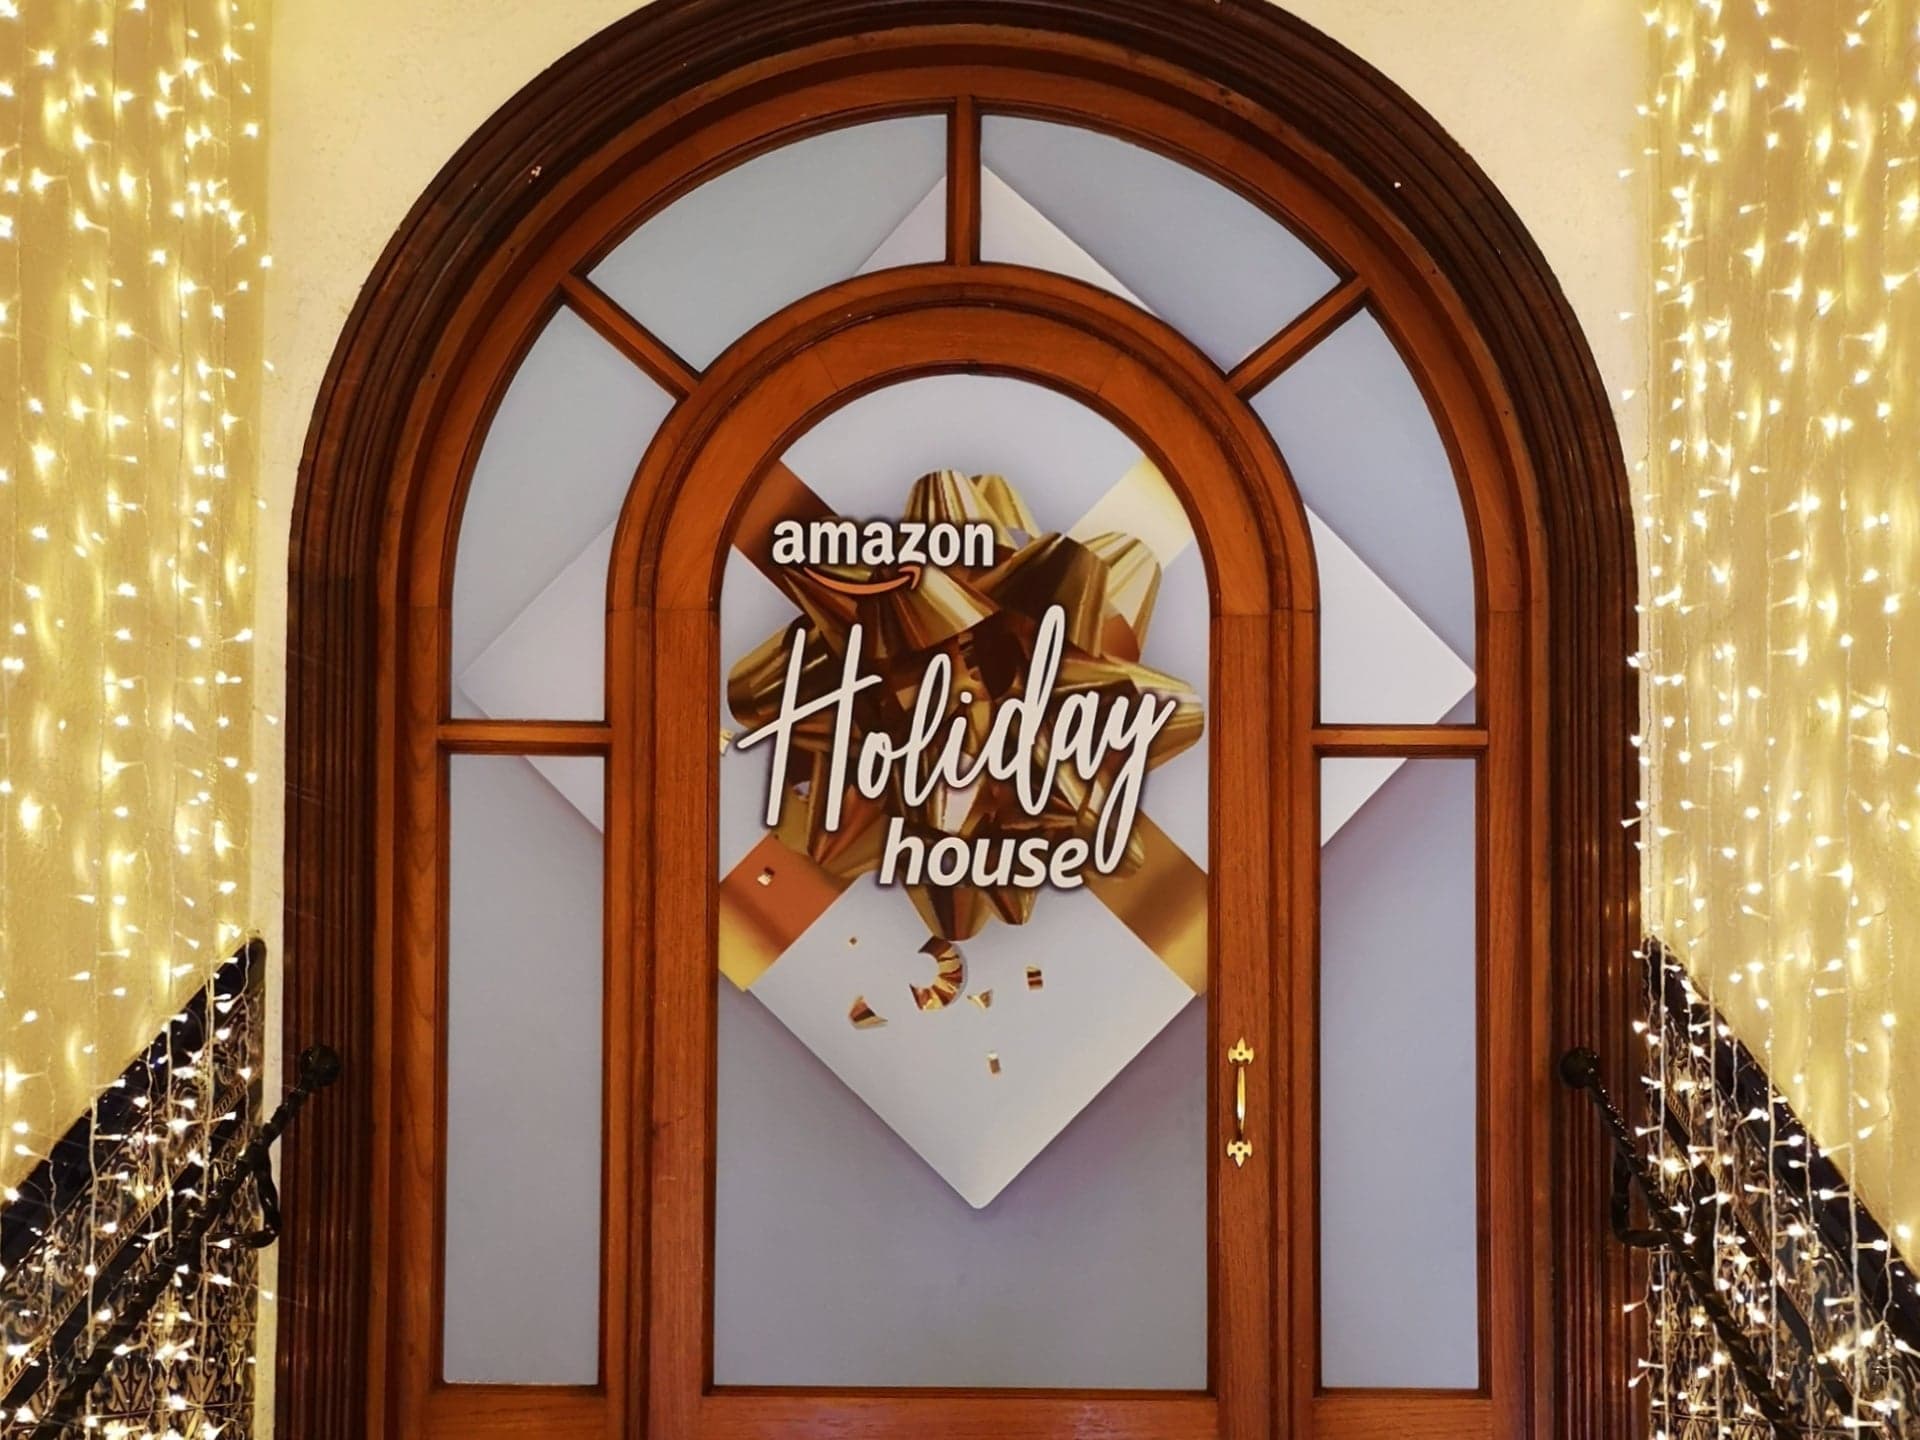 Amazon Holiday House